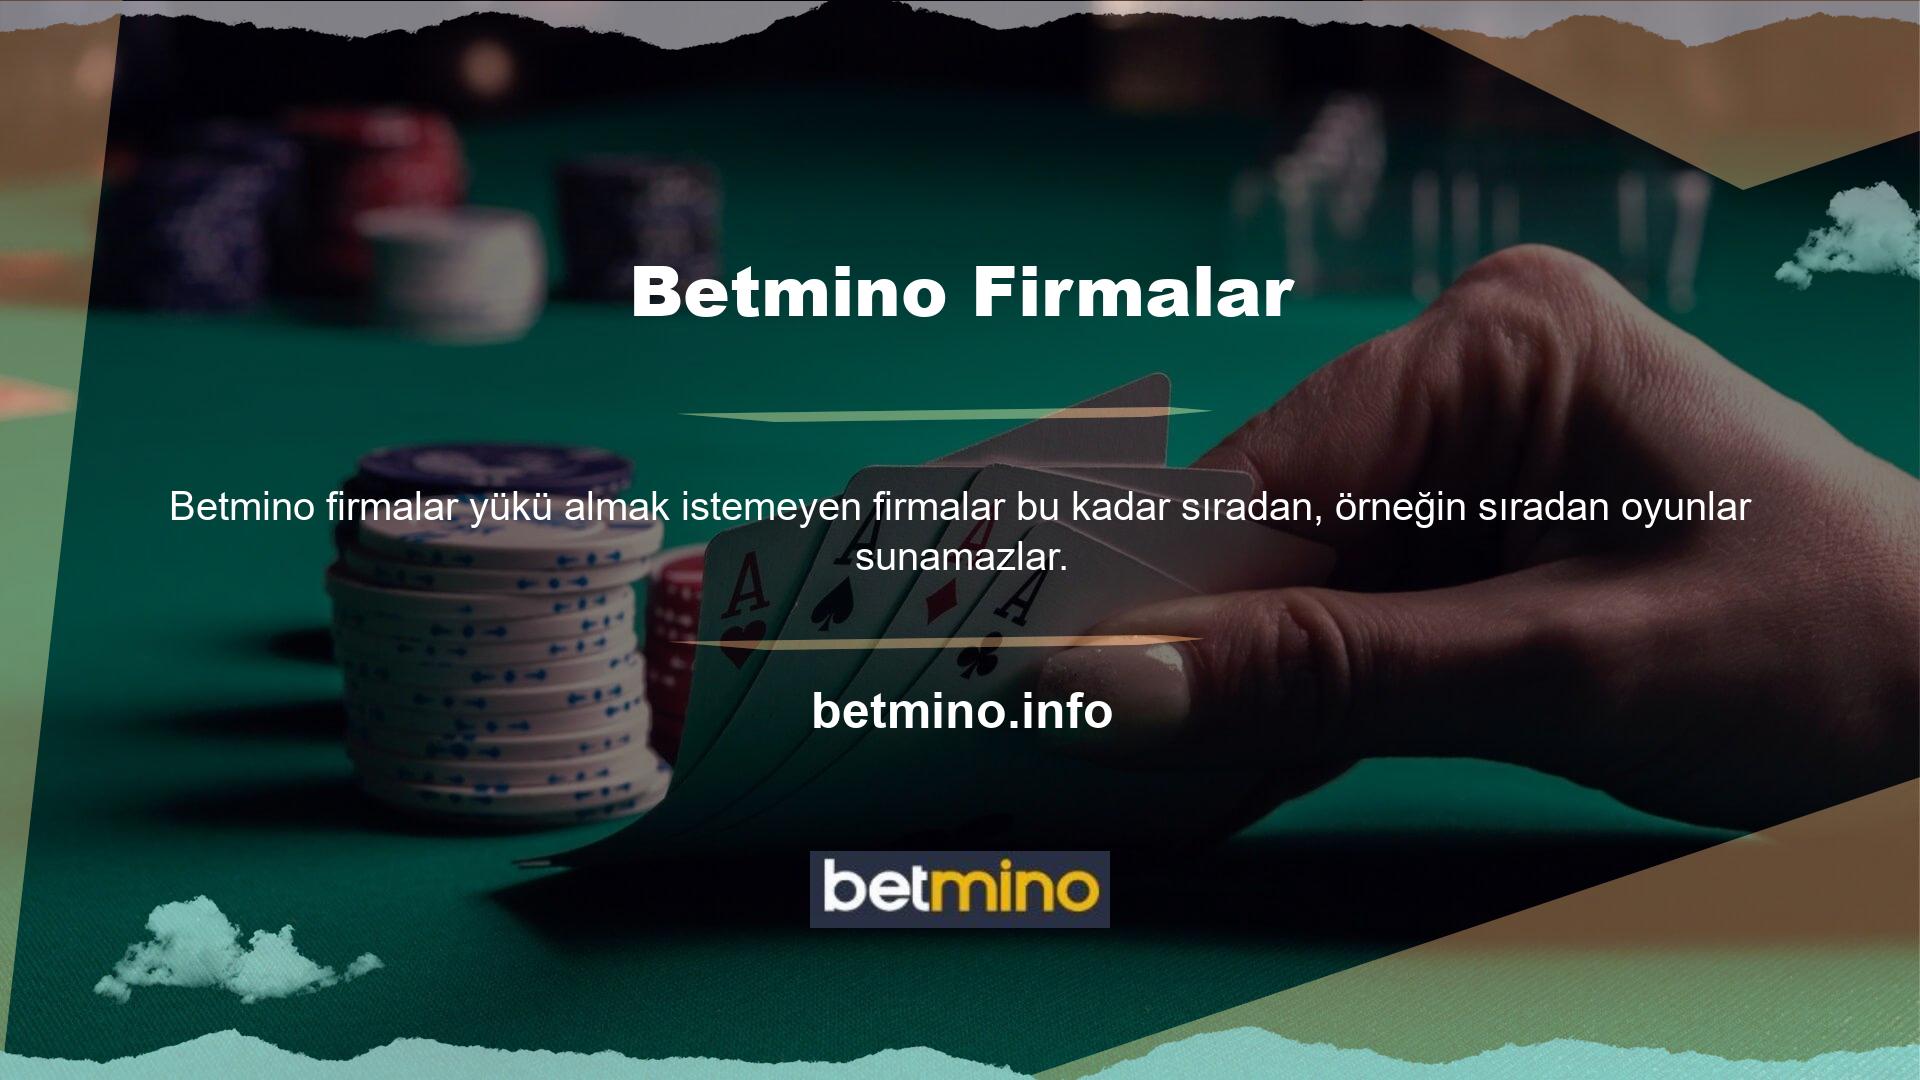 Betmino Poker, müşterilerinin ihtiyaçlarını karşılamayı hedefleyen, her türlü yeniliği benimseyen ve oyunu bu amaçla oynayan şirketlerden biridir